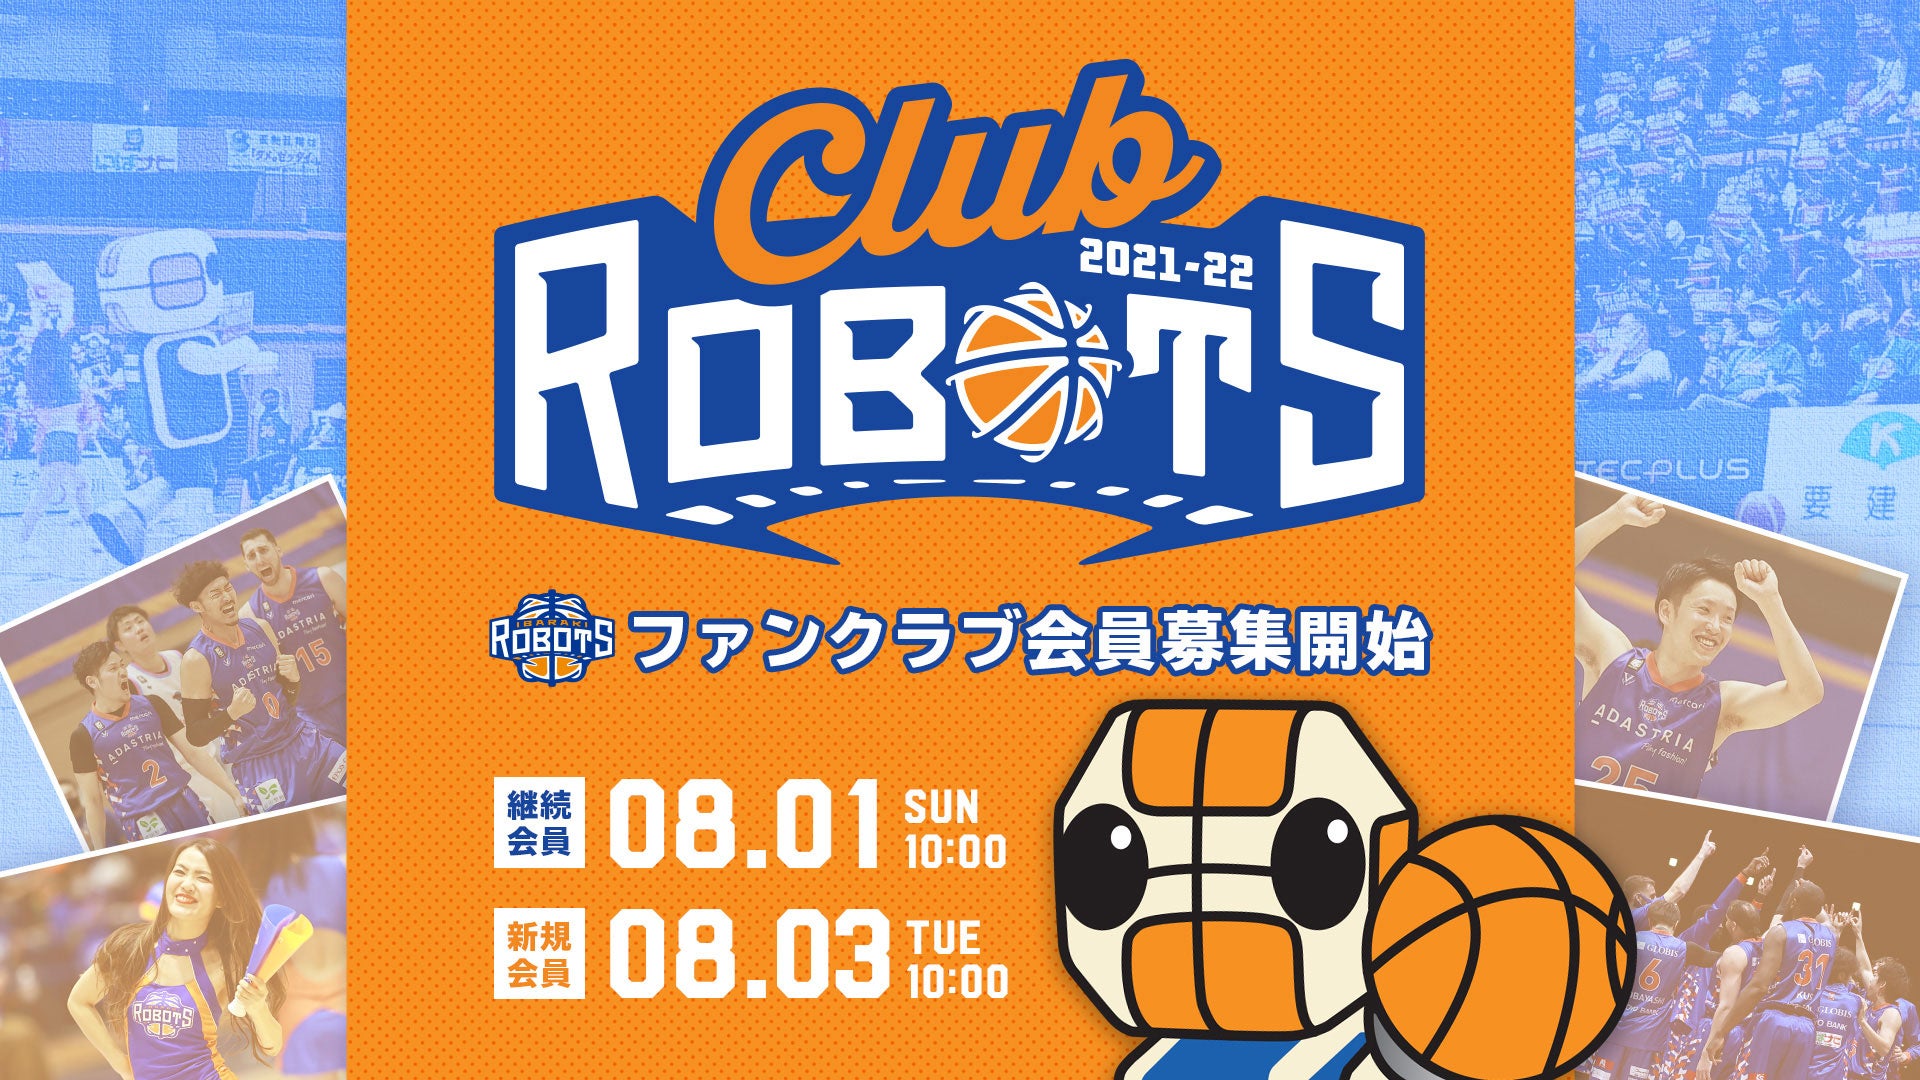 CLUB ROBOTS